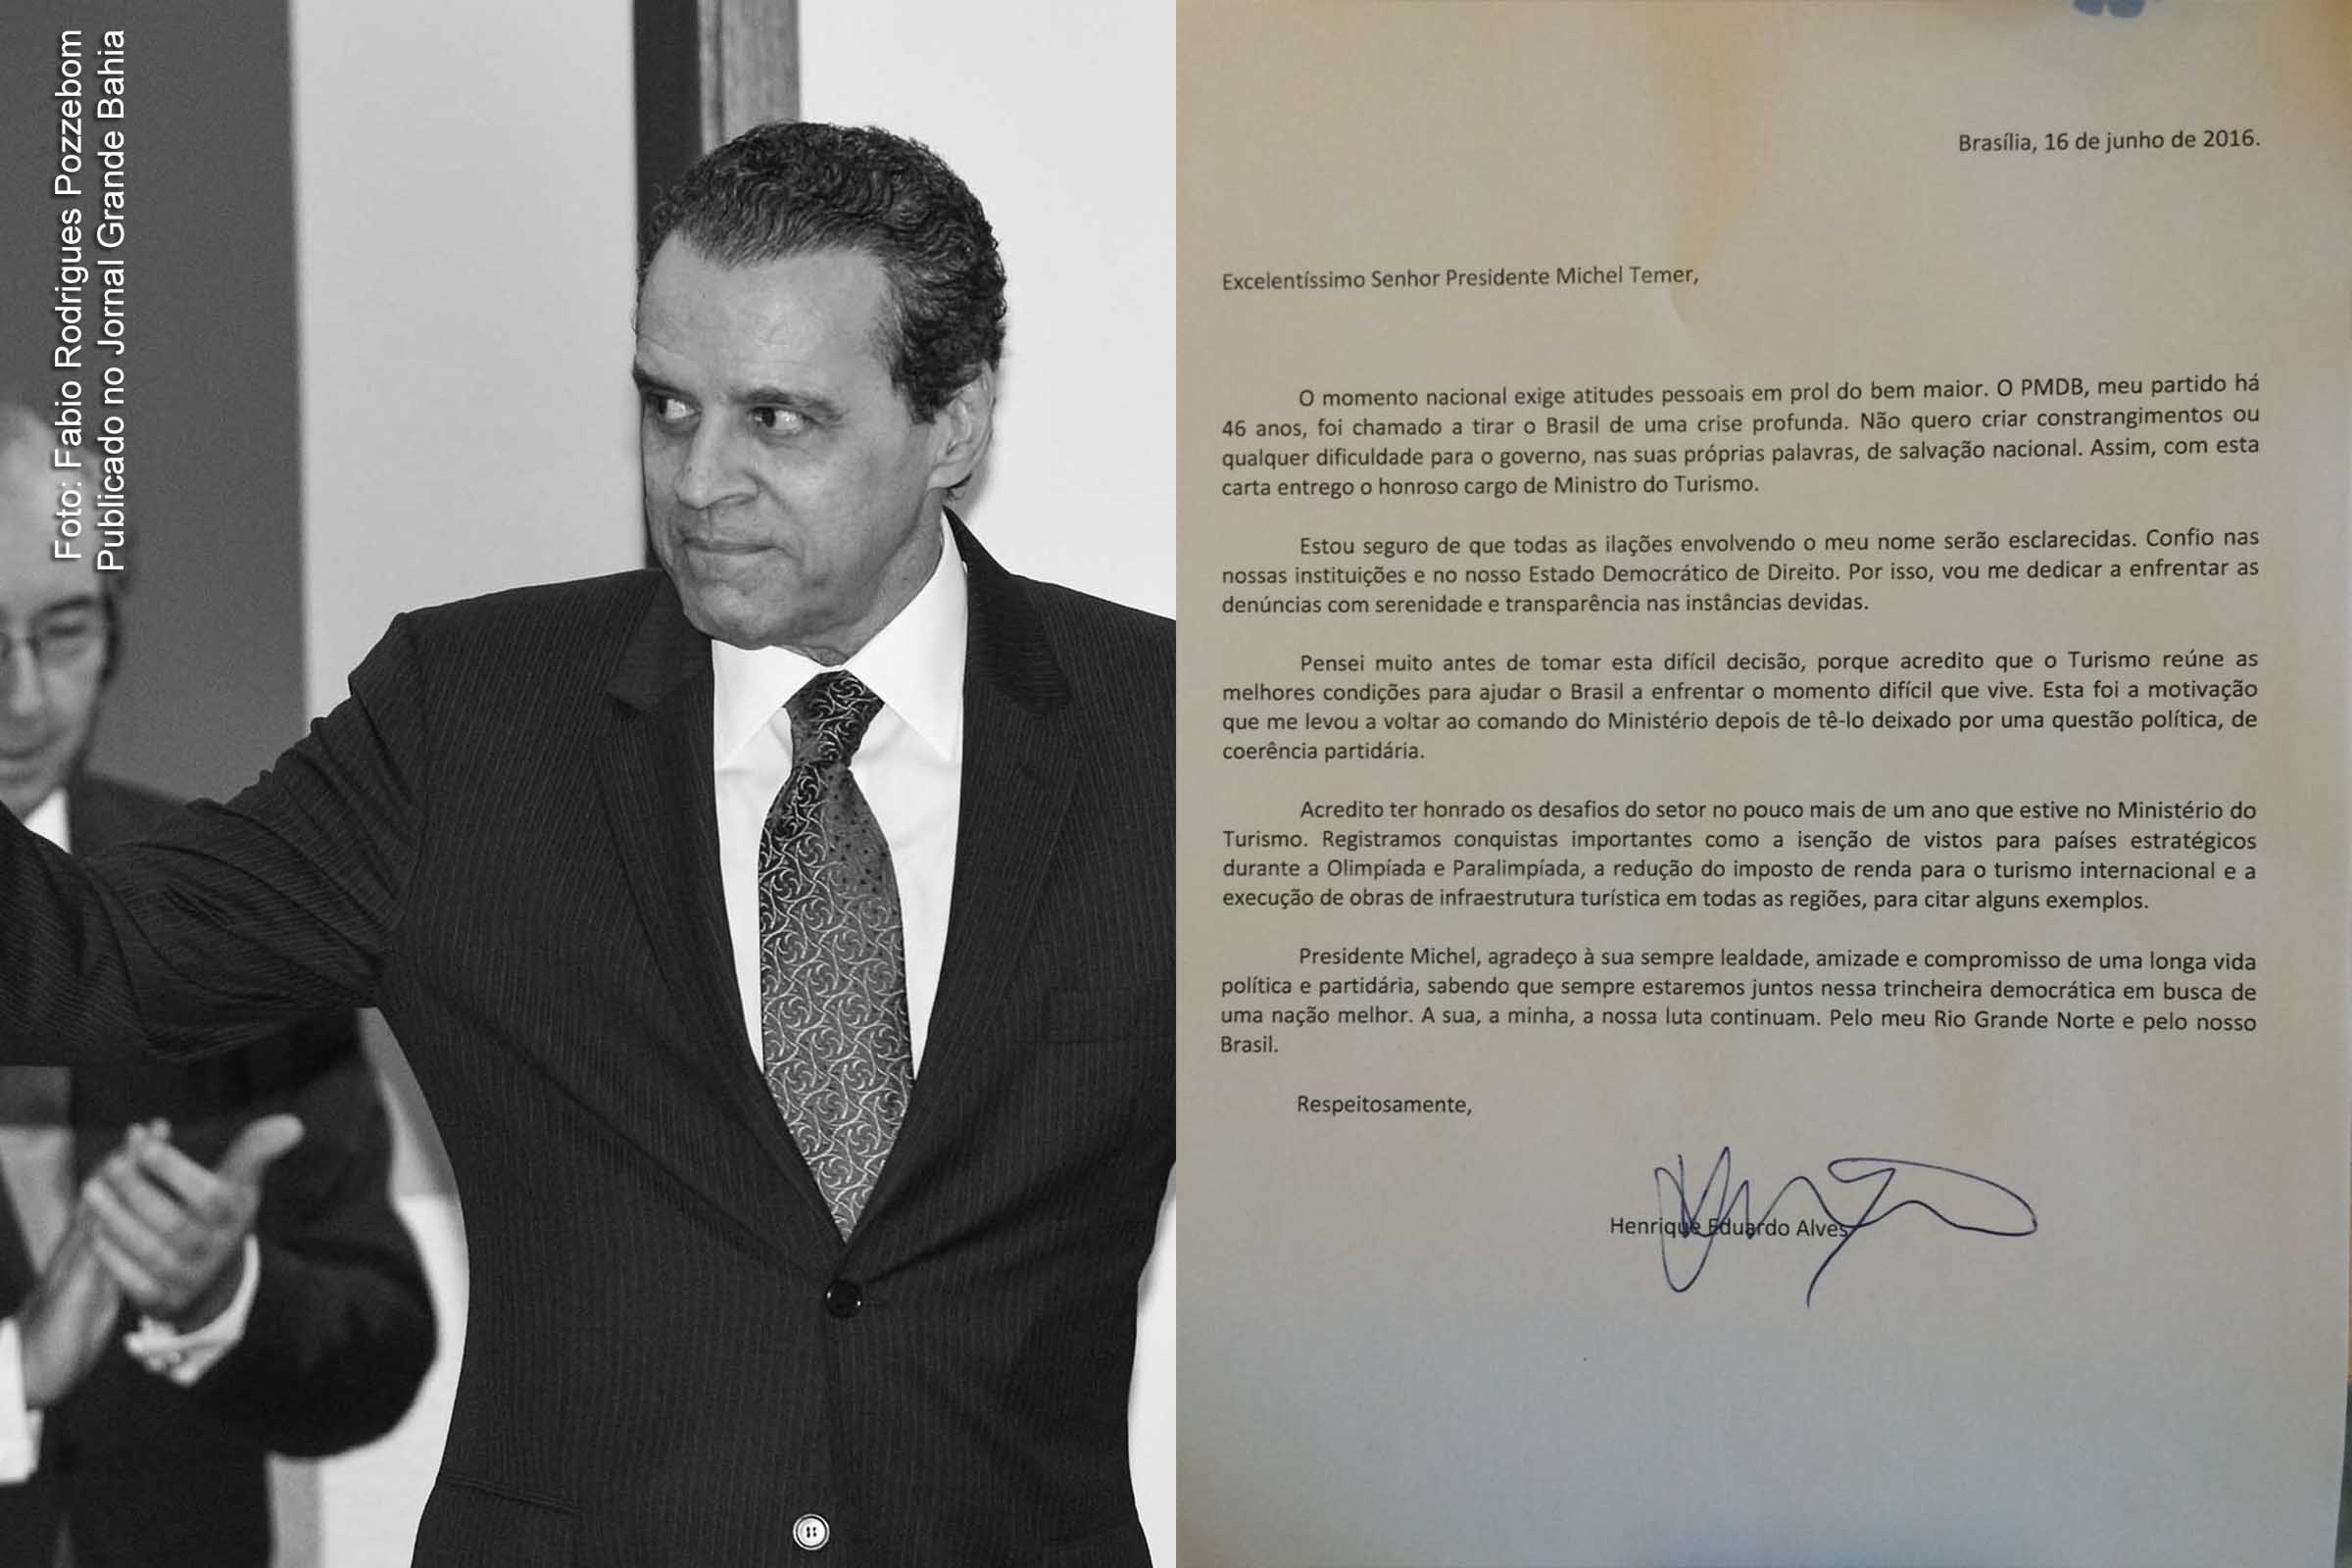 Henrique Eduardo Alves diz que deixa cargo para não constranger o governo. Ao lado, carta com pedido de demissão.